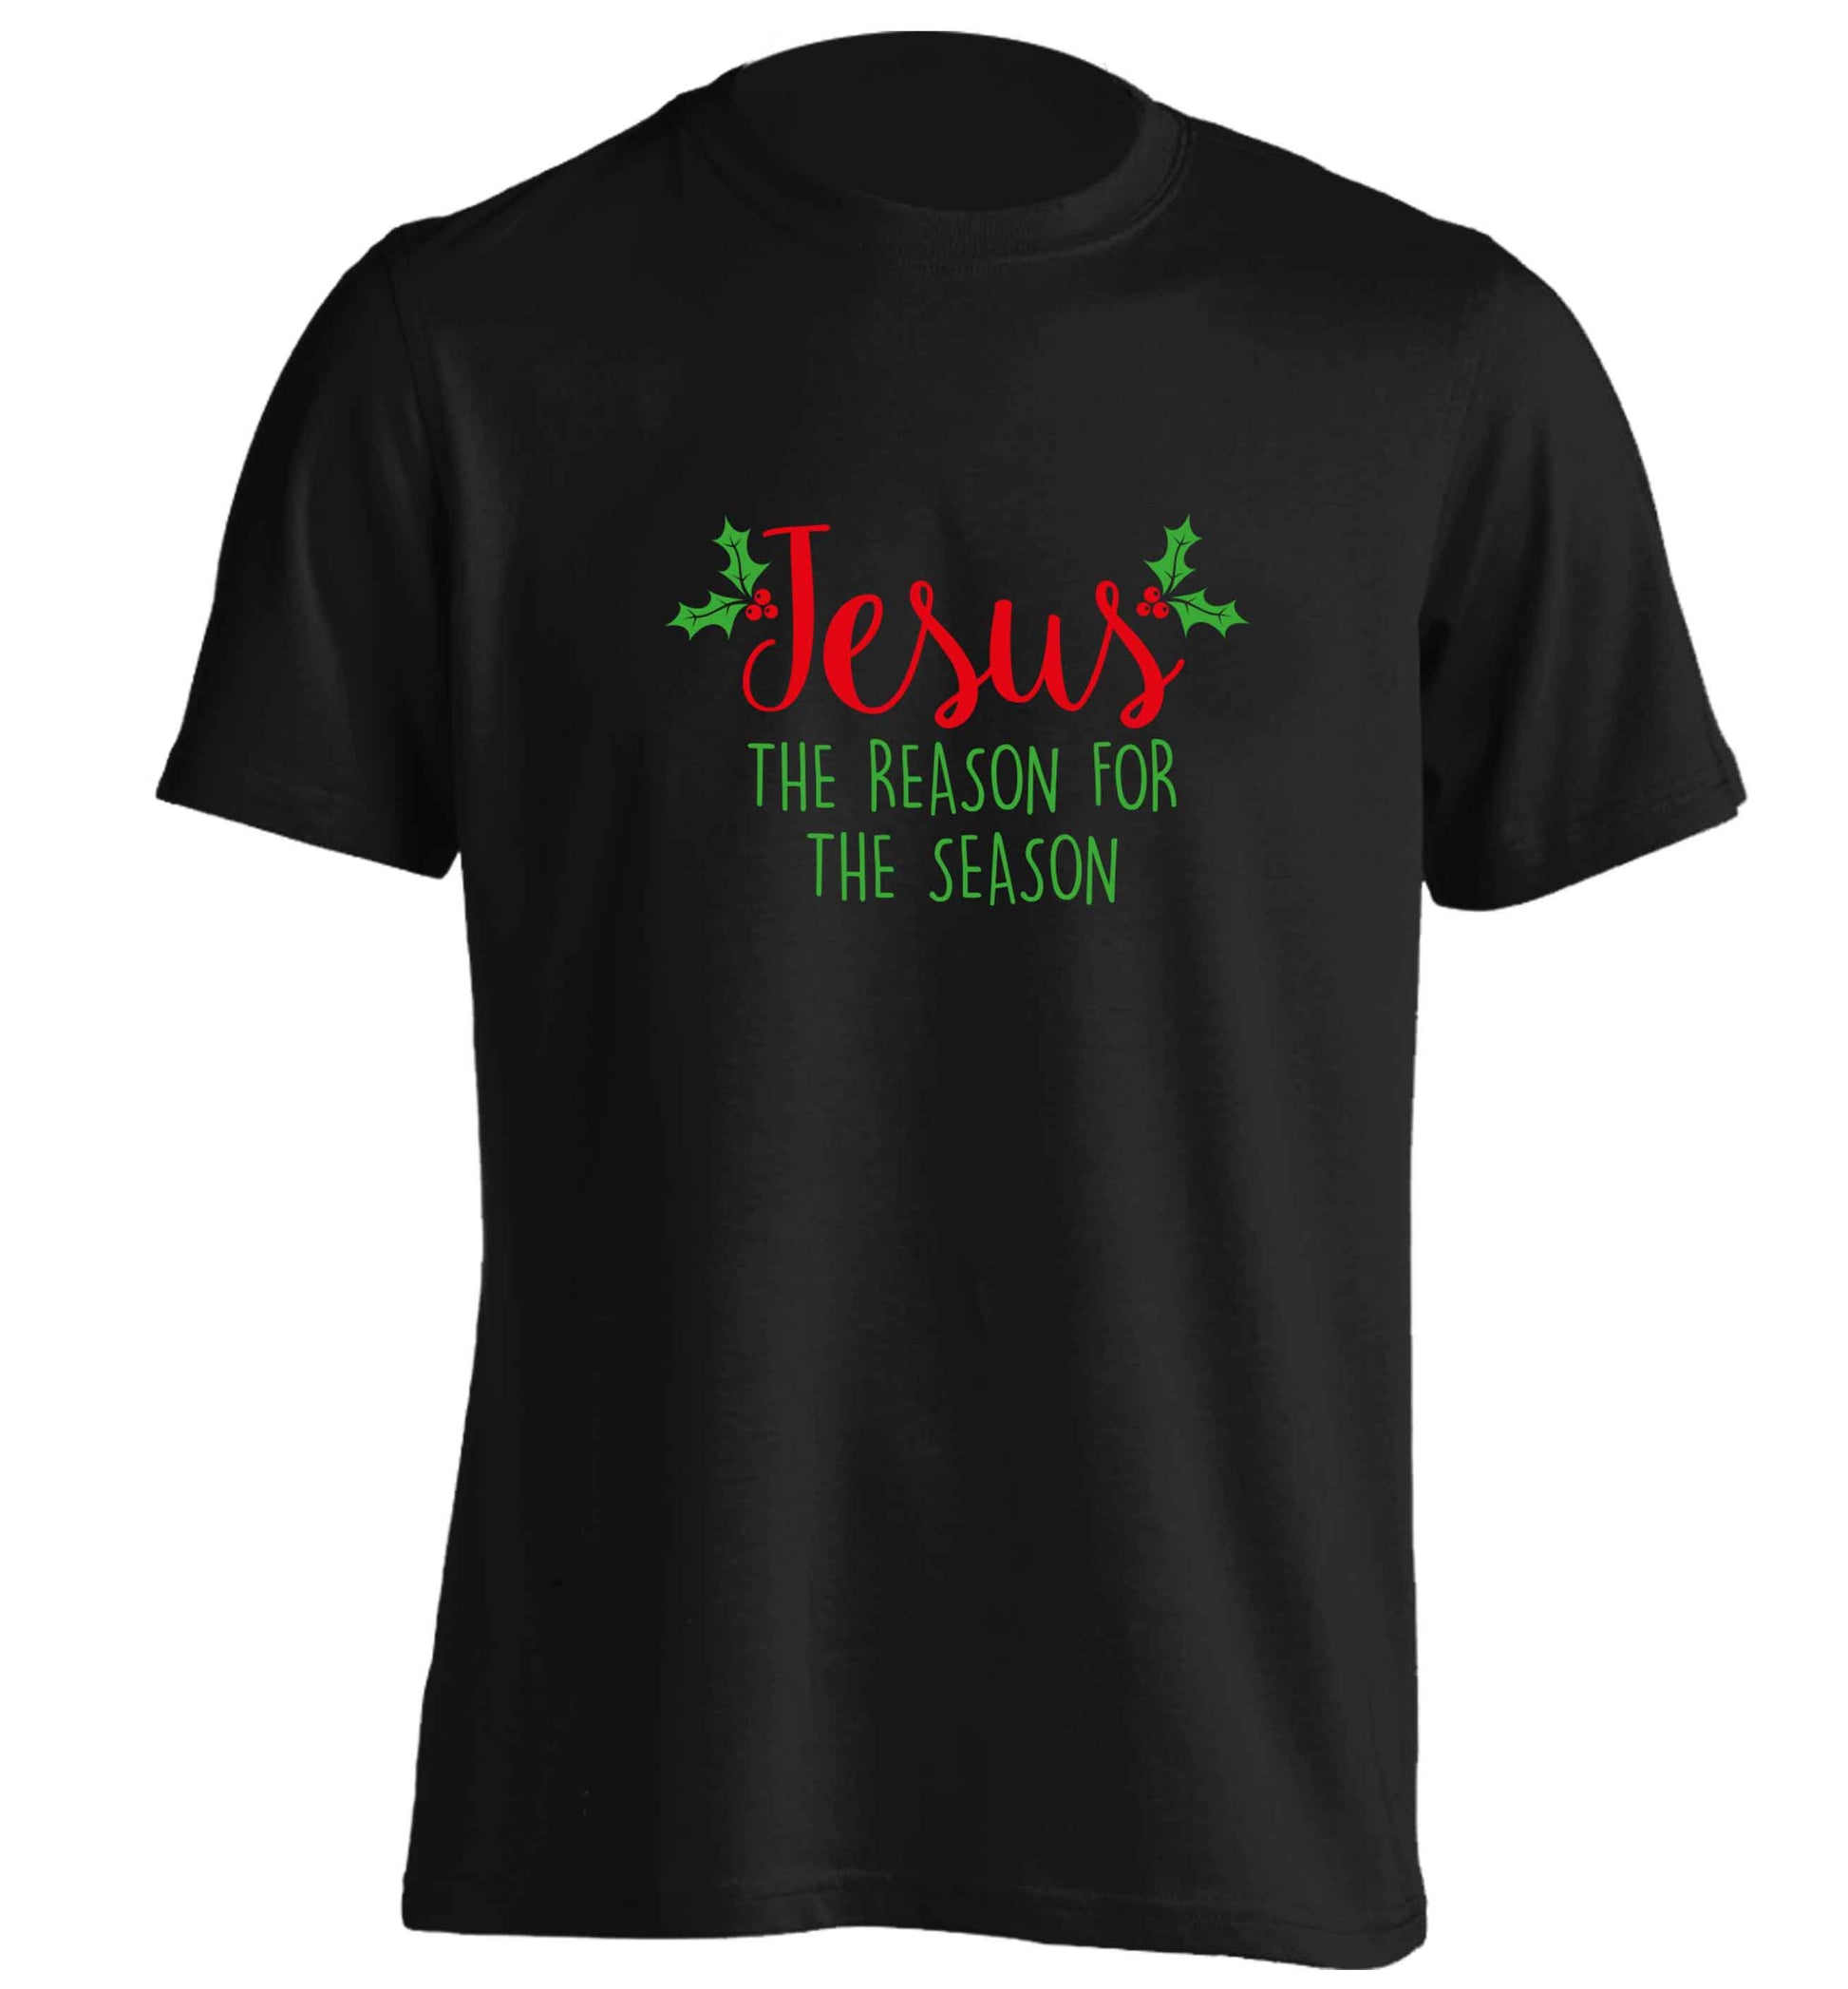 Jesus the reason for the season adults unisex black Tshirt 2XL